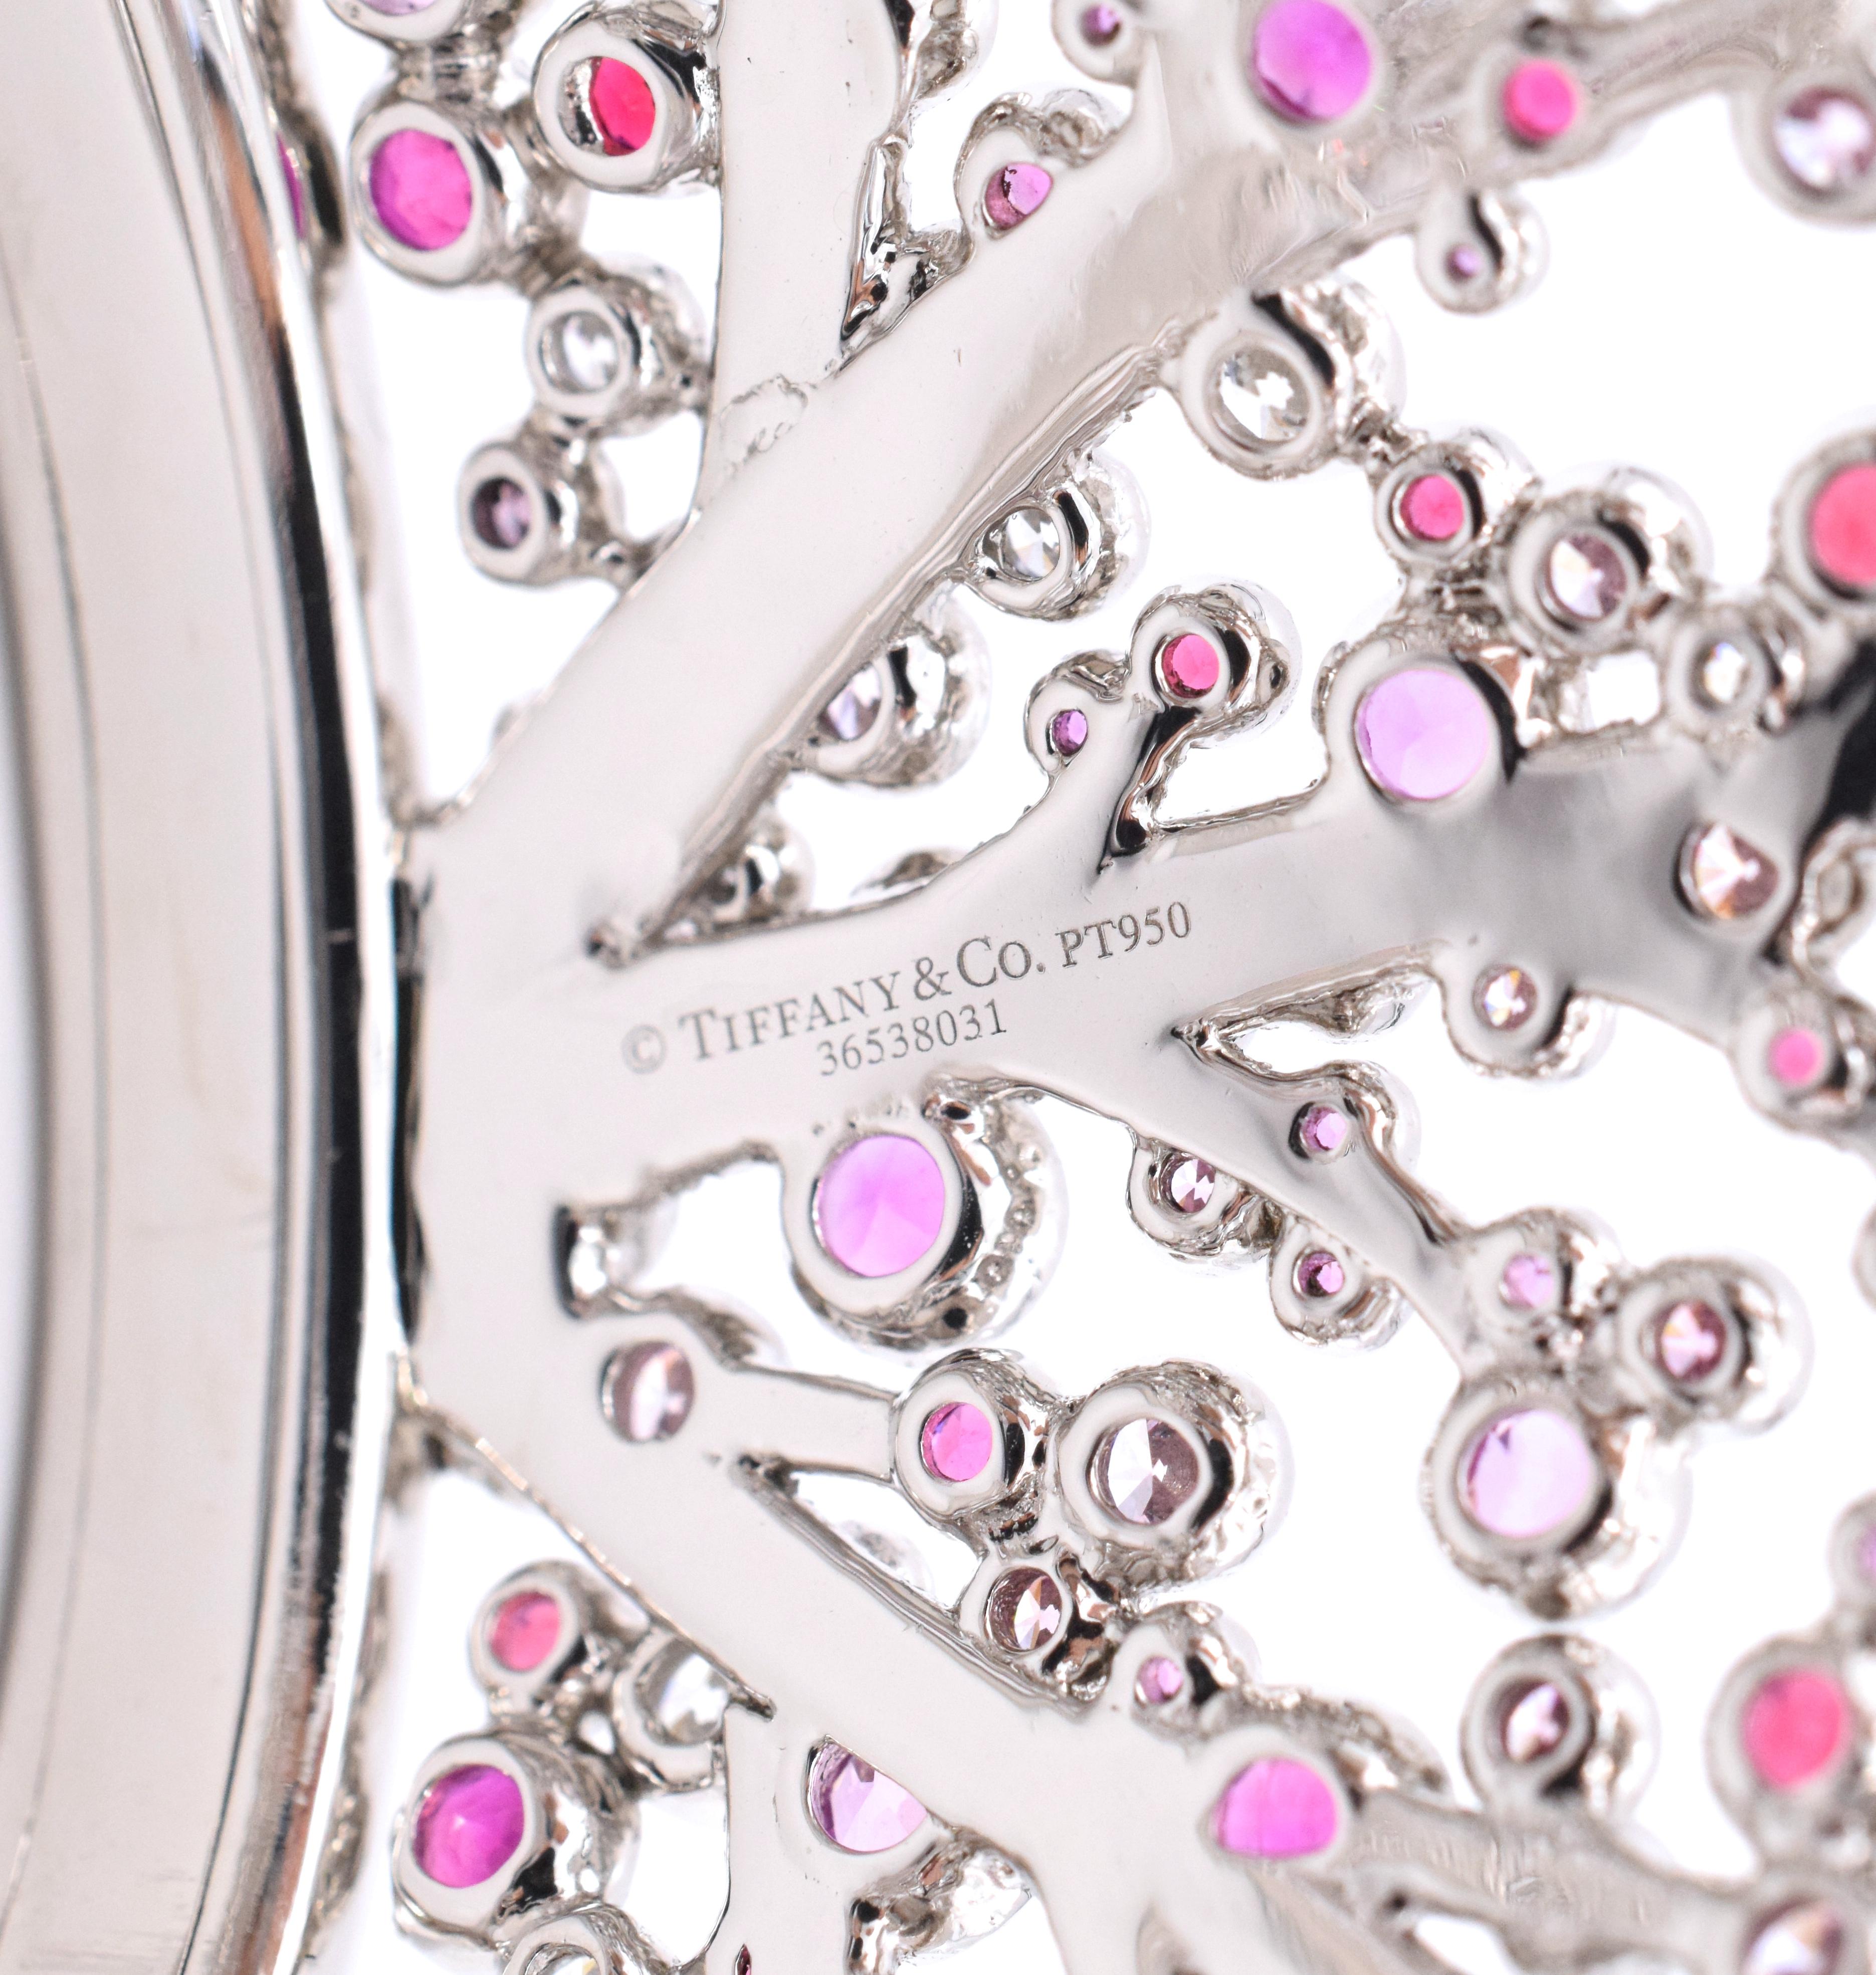 Artist Tiffany & Co. Pink Diamond, Sapphire Bracelet or Earrings For Sale